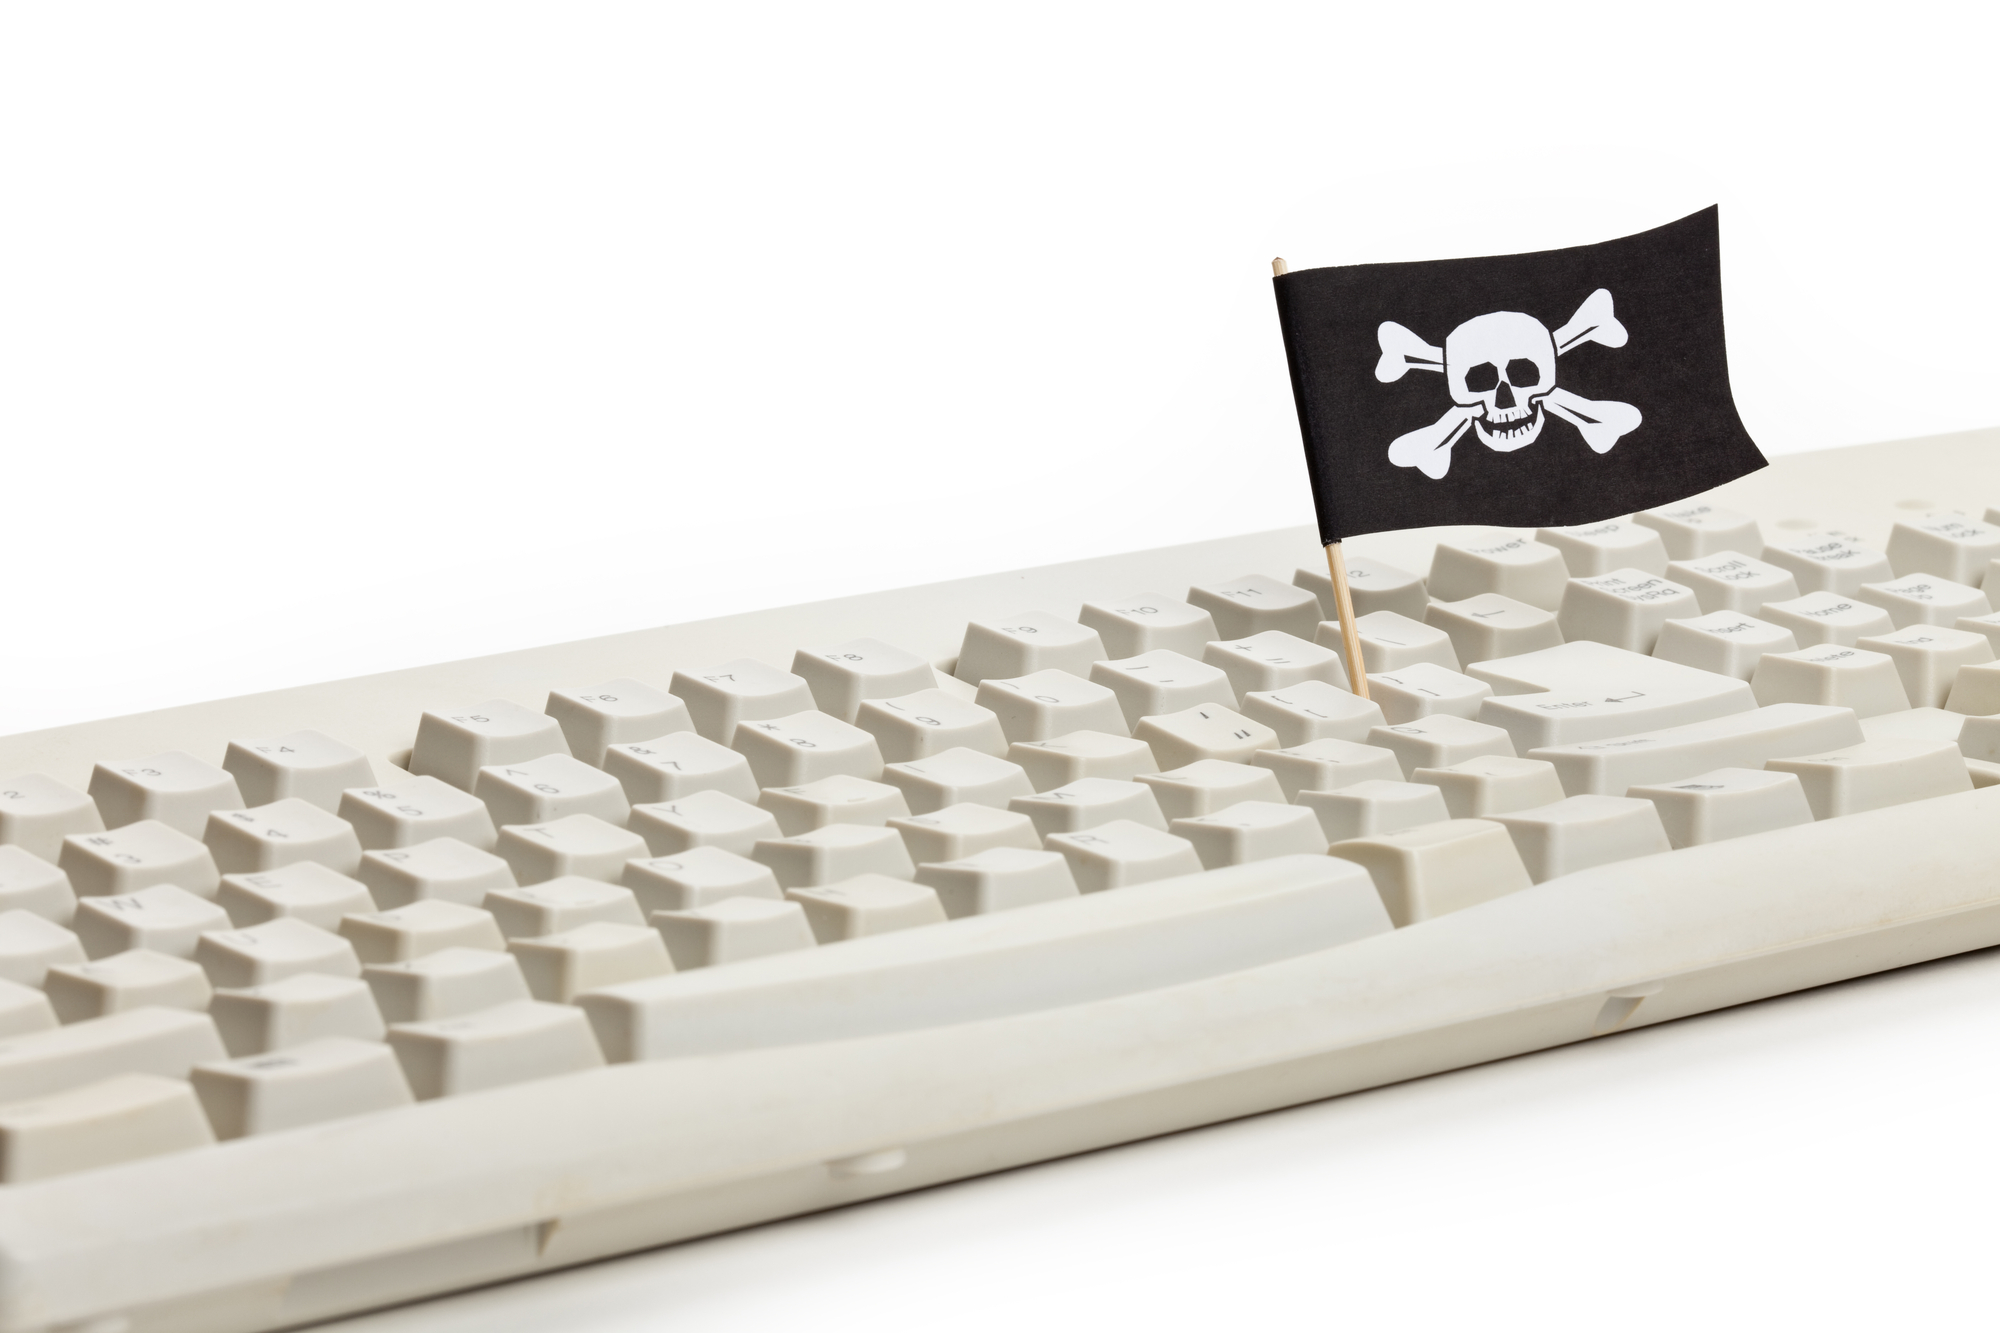 Mit Operation 404 gegen Piracy